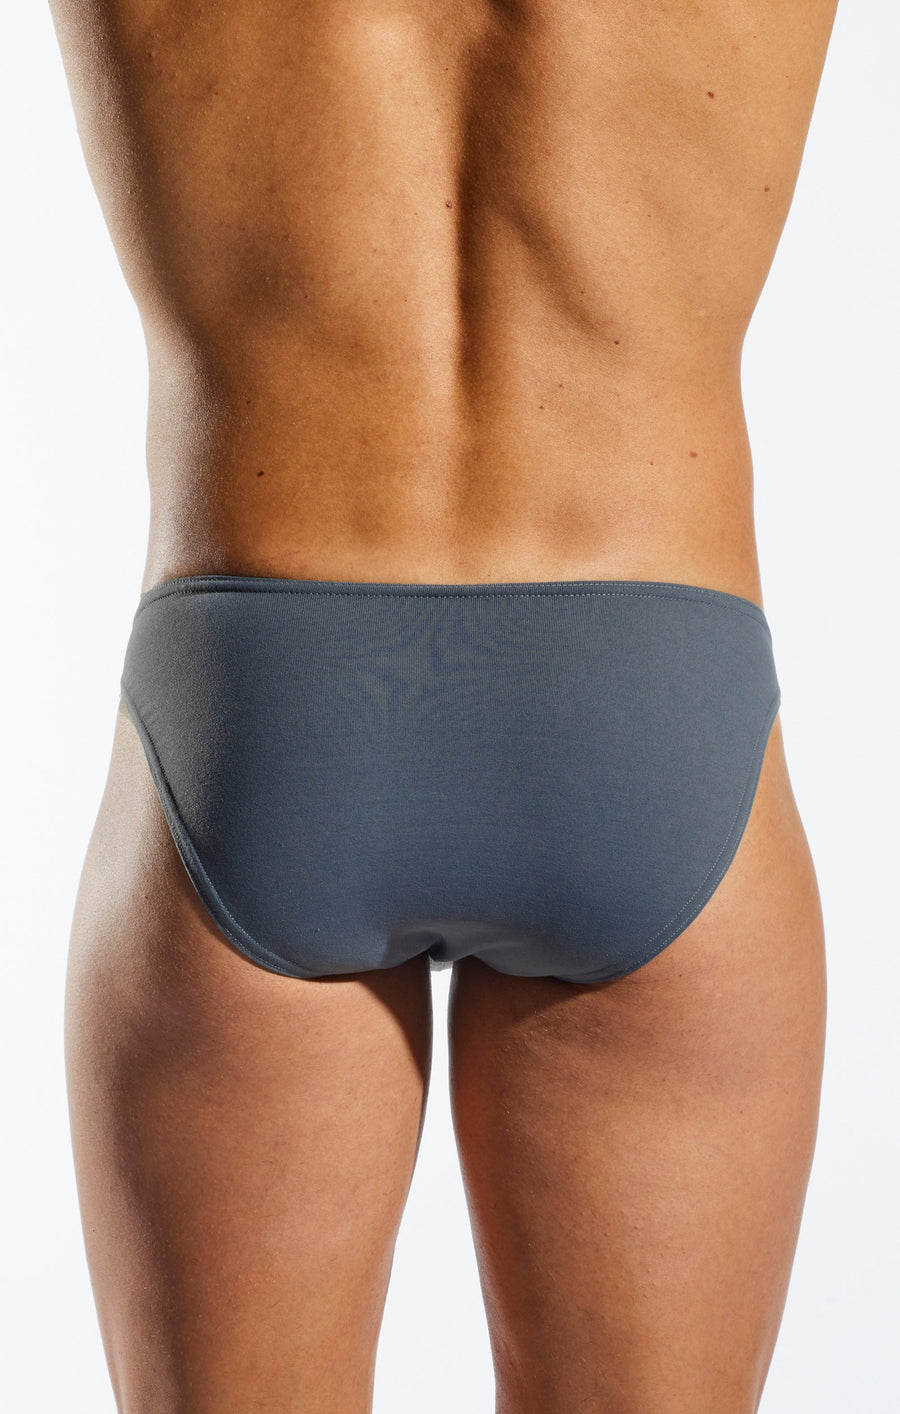 Cocksox® Mens Low Rise Bulge Pouch Bikini Underwear